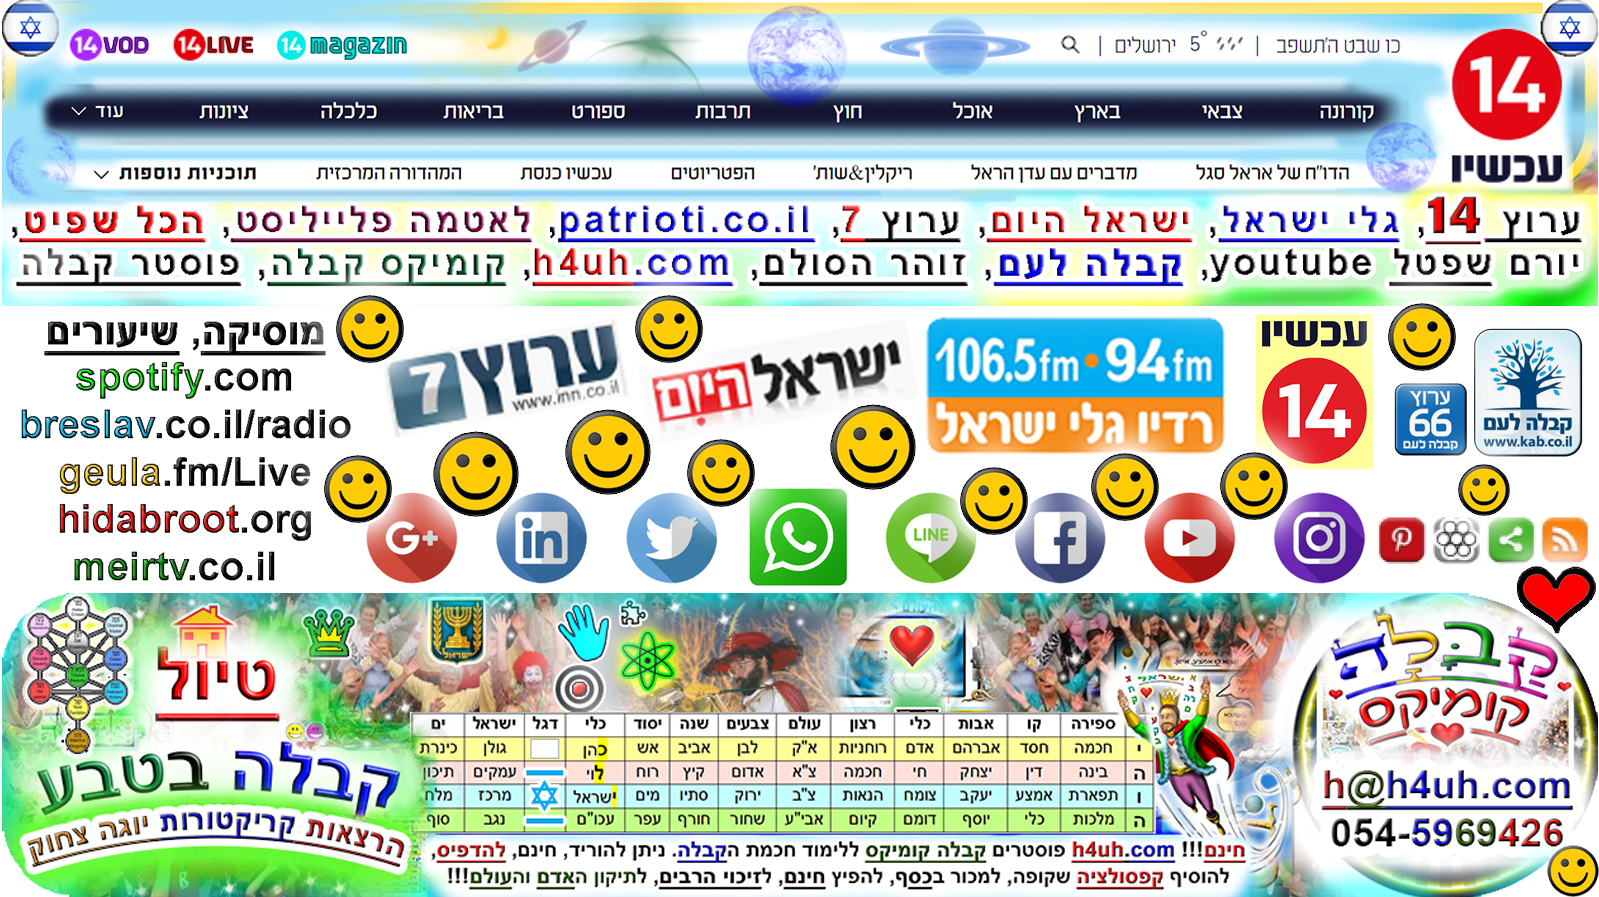 לאטמה - תכנית הסאטירה הכי מצחיקה במדינה! התכנית משודרת בערוץ 20 כל יום חמישי בערב אחרי החדשות ניתן למצוא את הפרקים המלאים גם באתר ובאפליקציית ערוץ 20_http://h4uh.com/wp-content/uploads/2020/05/communication-likud-israel-jerusalem-kabbalah-zionism-judaism-eretz-israel-love-latma-02.png